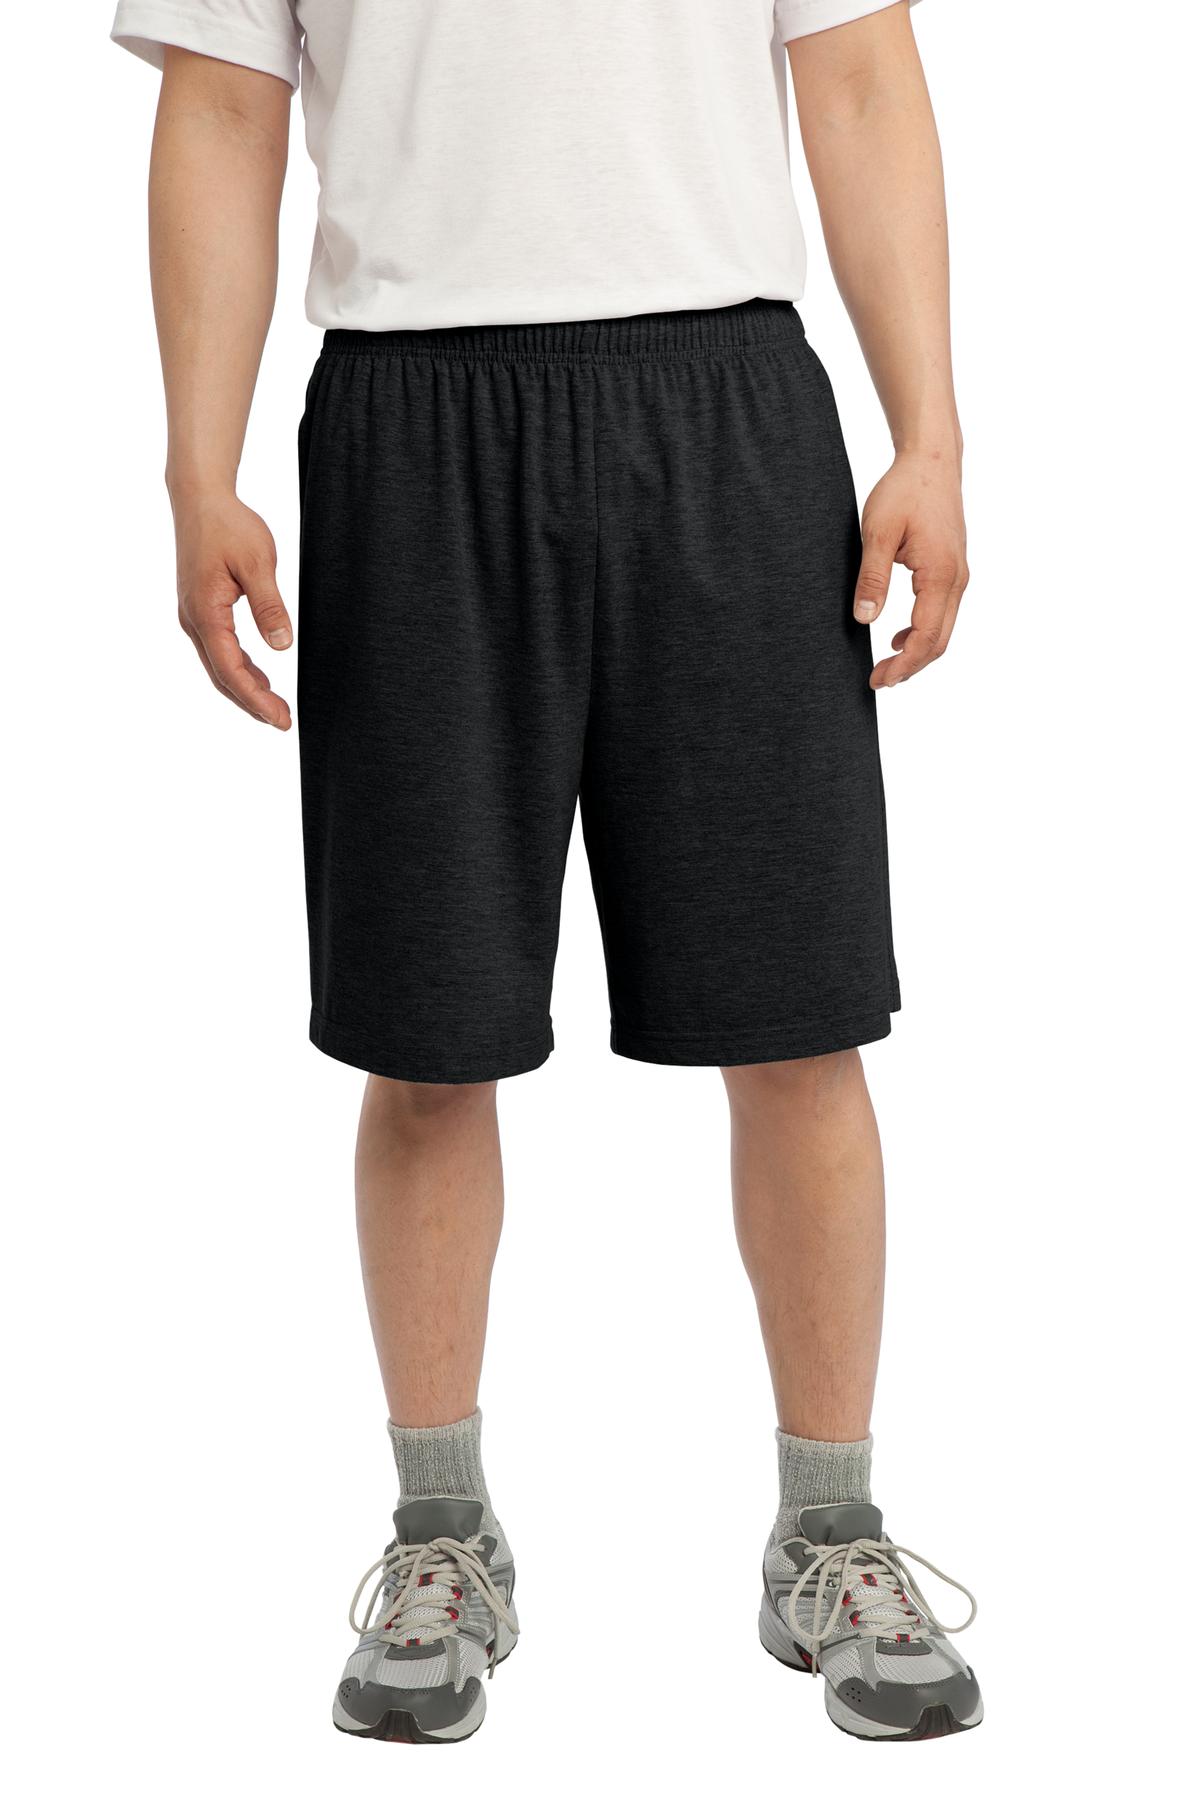 Sport-Tek Jersey Knit Short with Pockets-